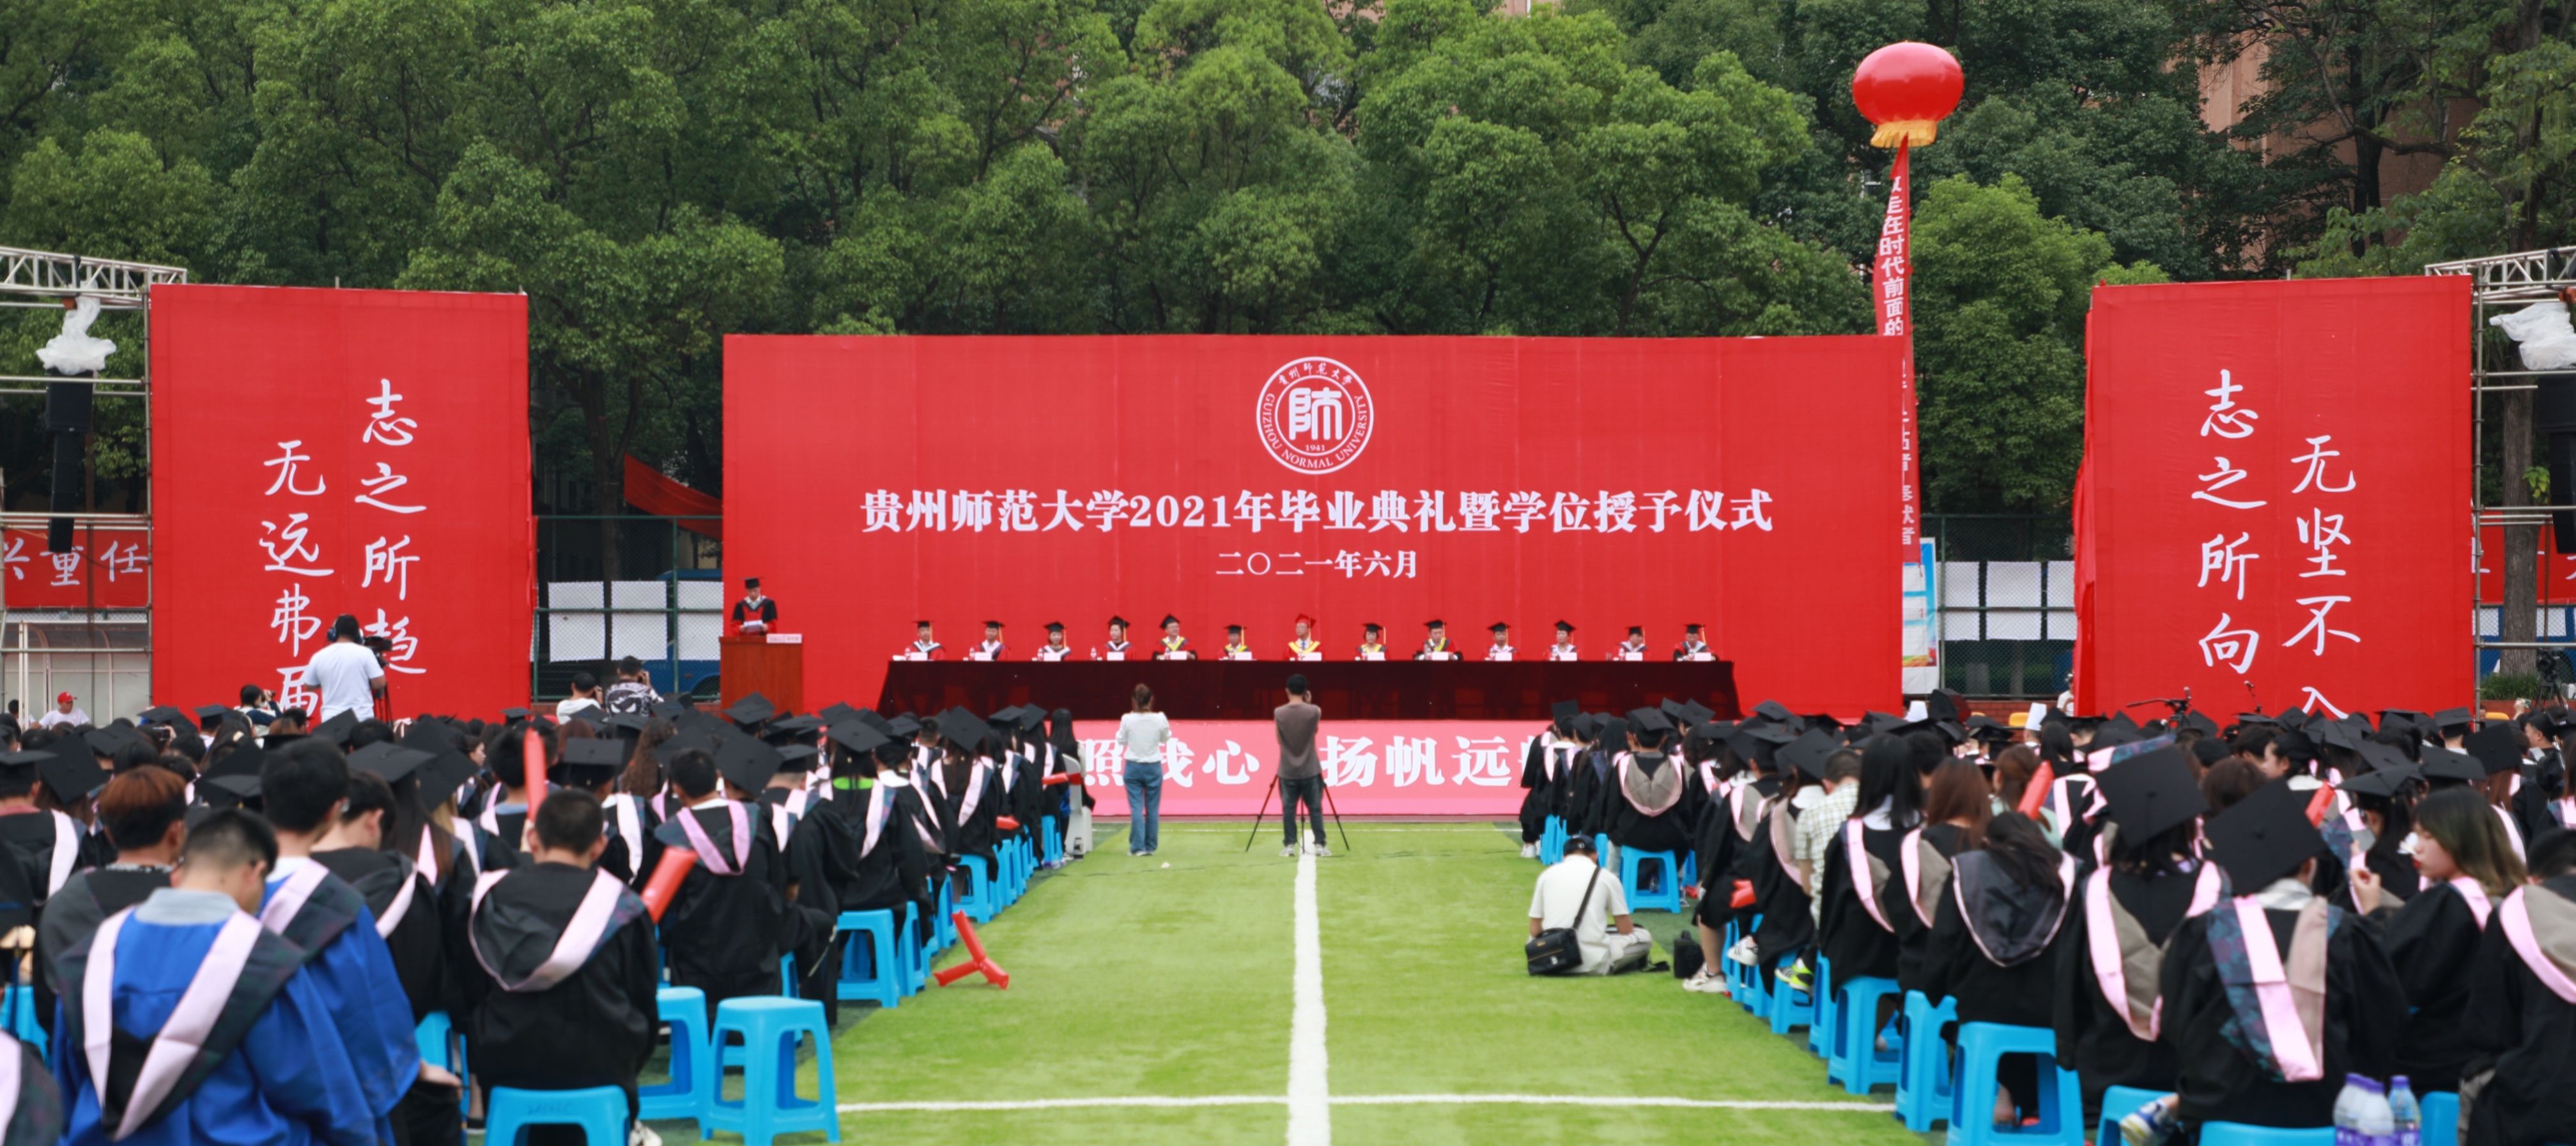 心有所信,方能行远!贵州师范大学举行2021年毕业典礼